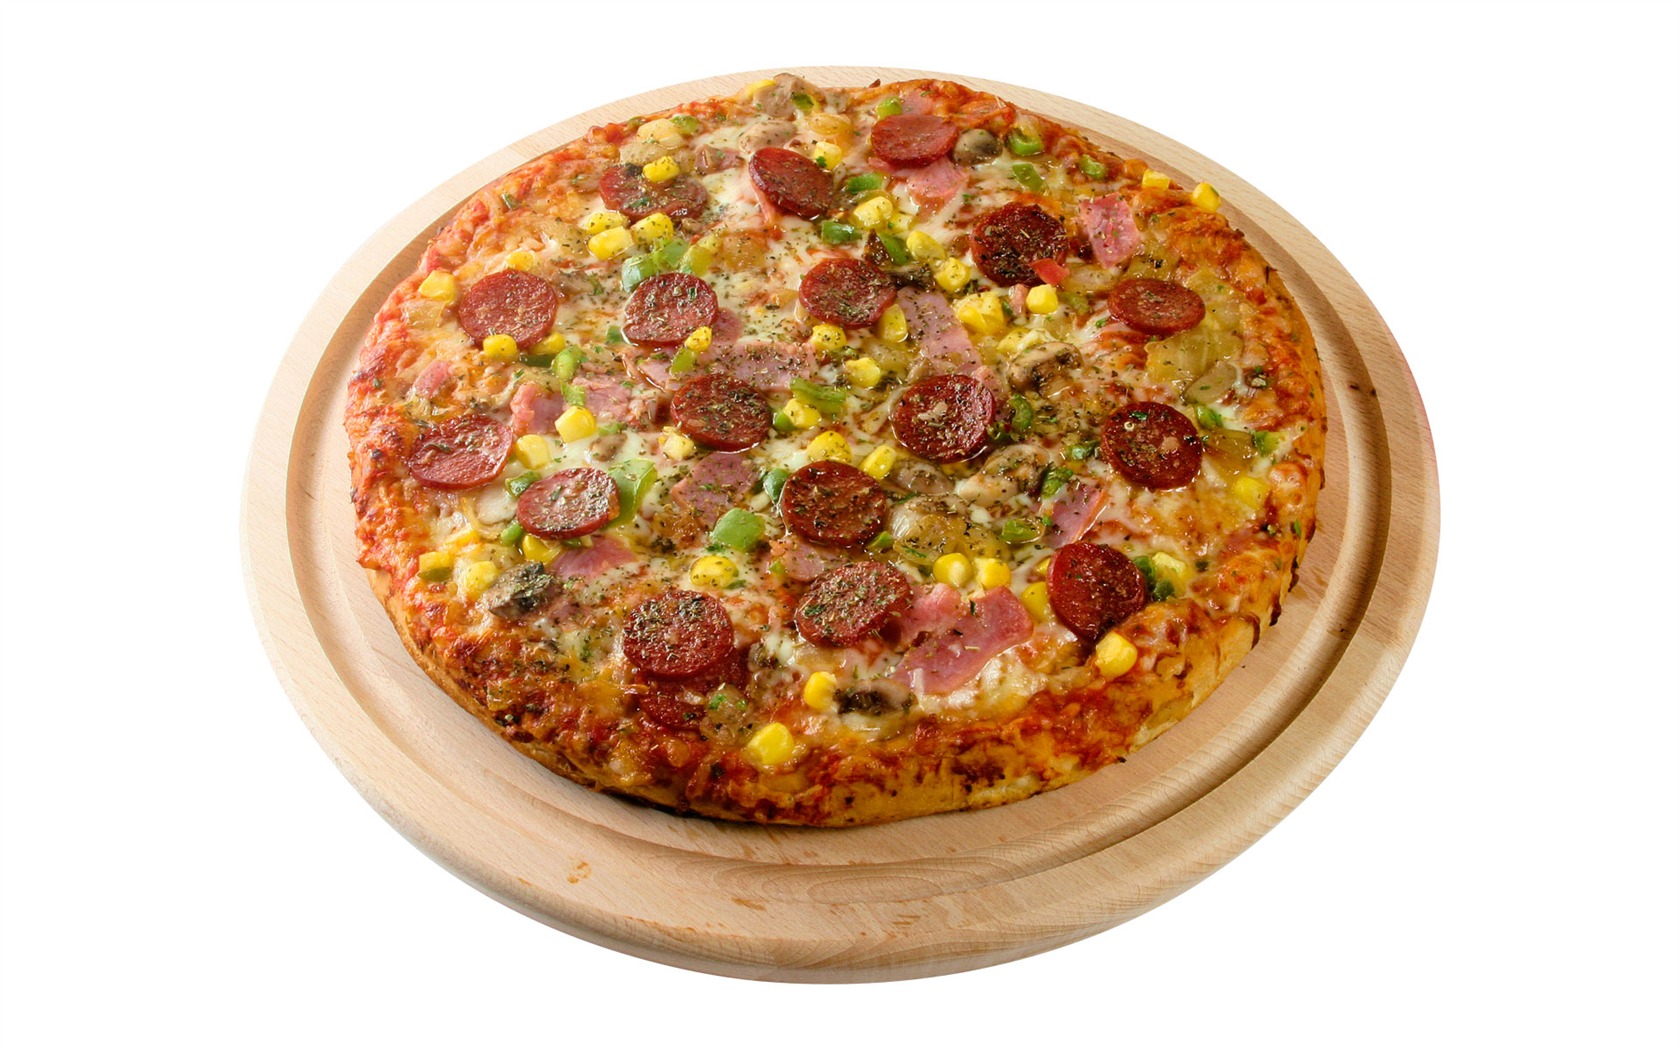 Fondos de pizzerías de Alimentos (3) #18 - 1680x1050